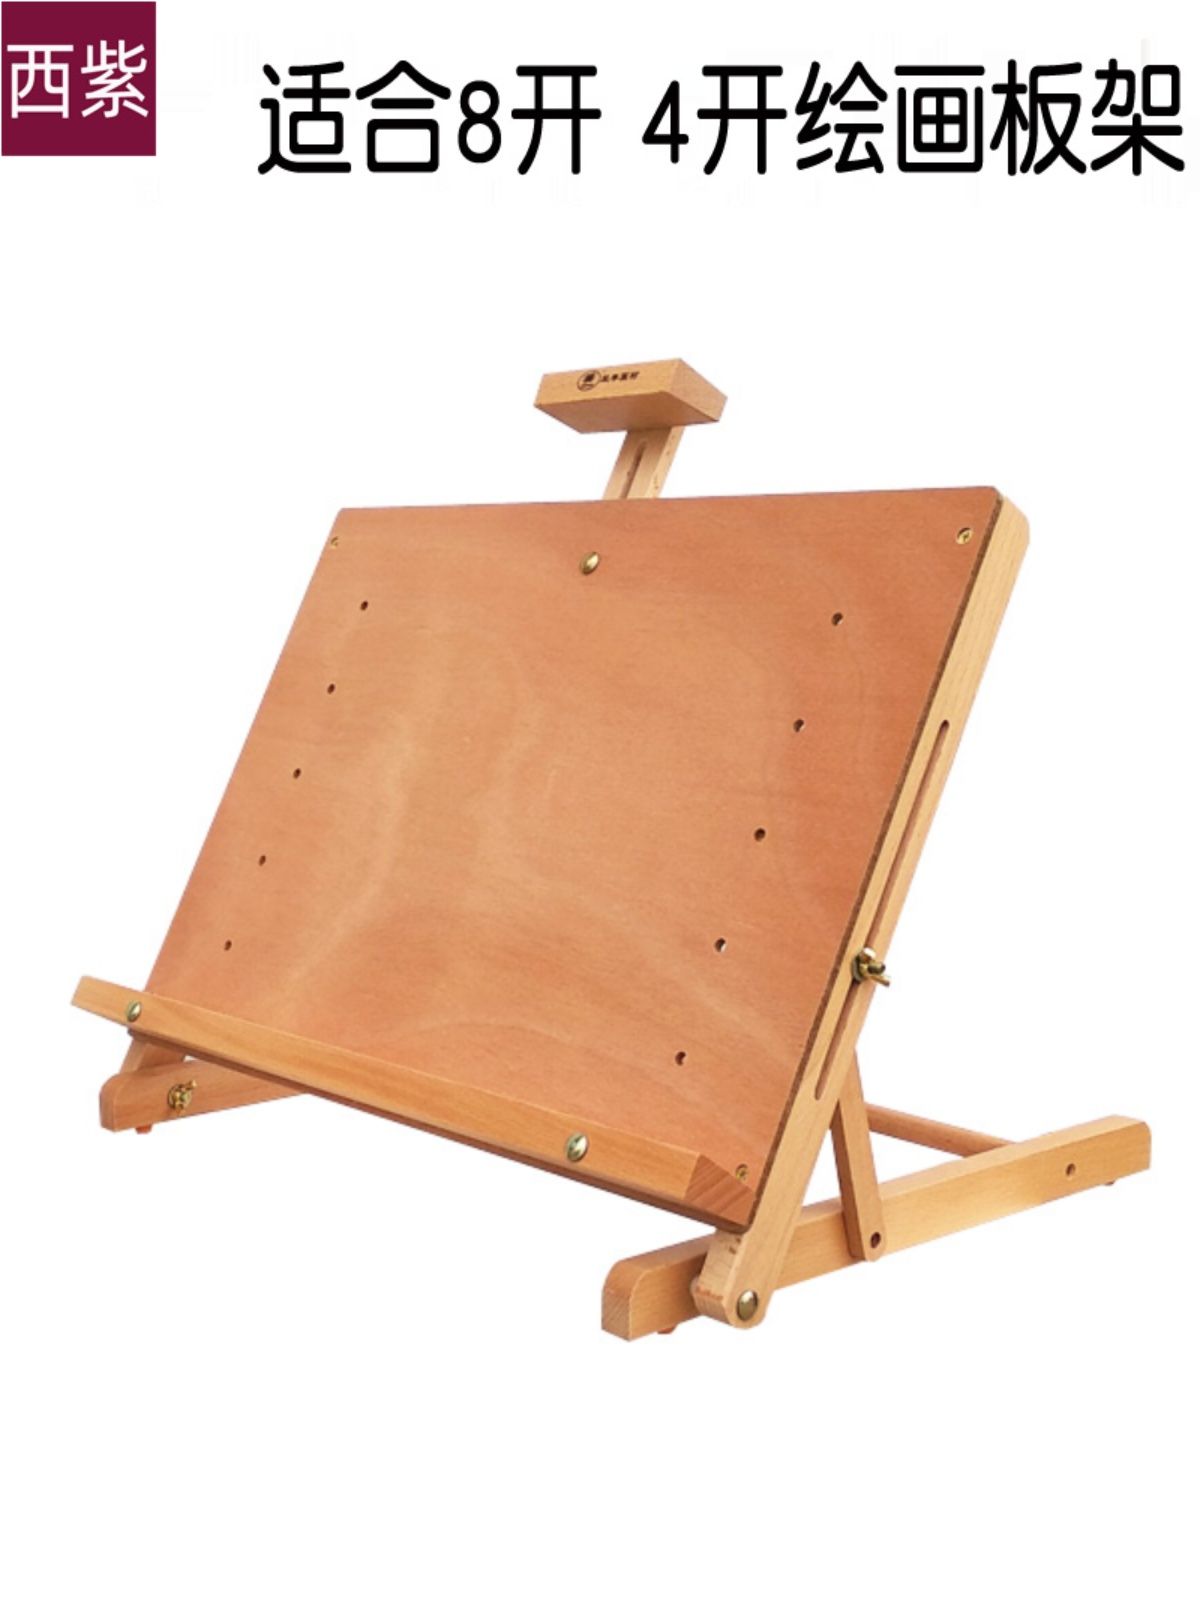 新品桌面可调节画架画板一体式榉木制升降素描水彩水粉油画架子木